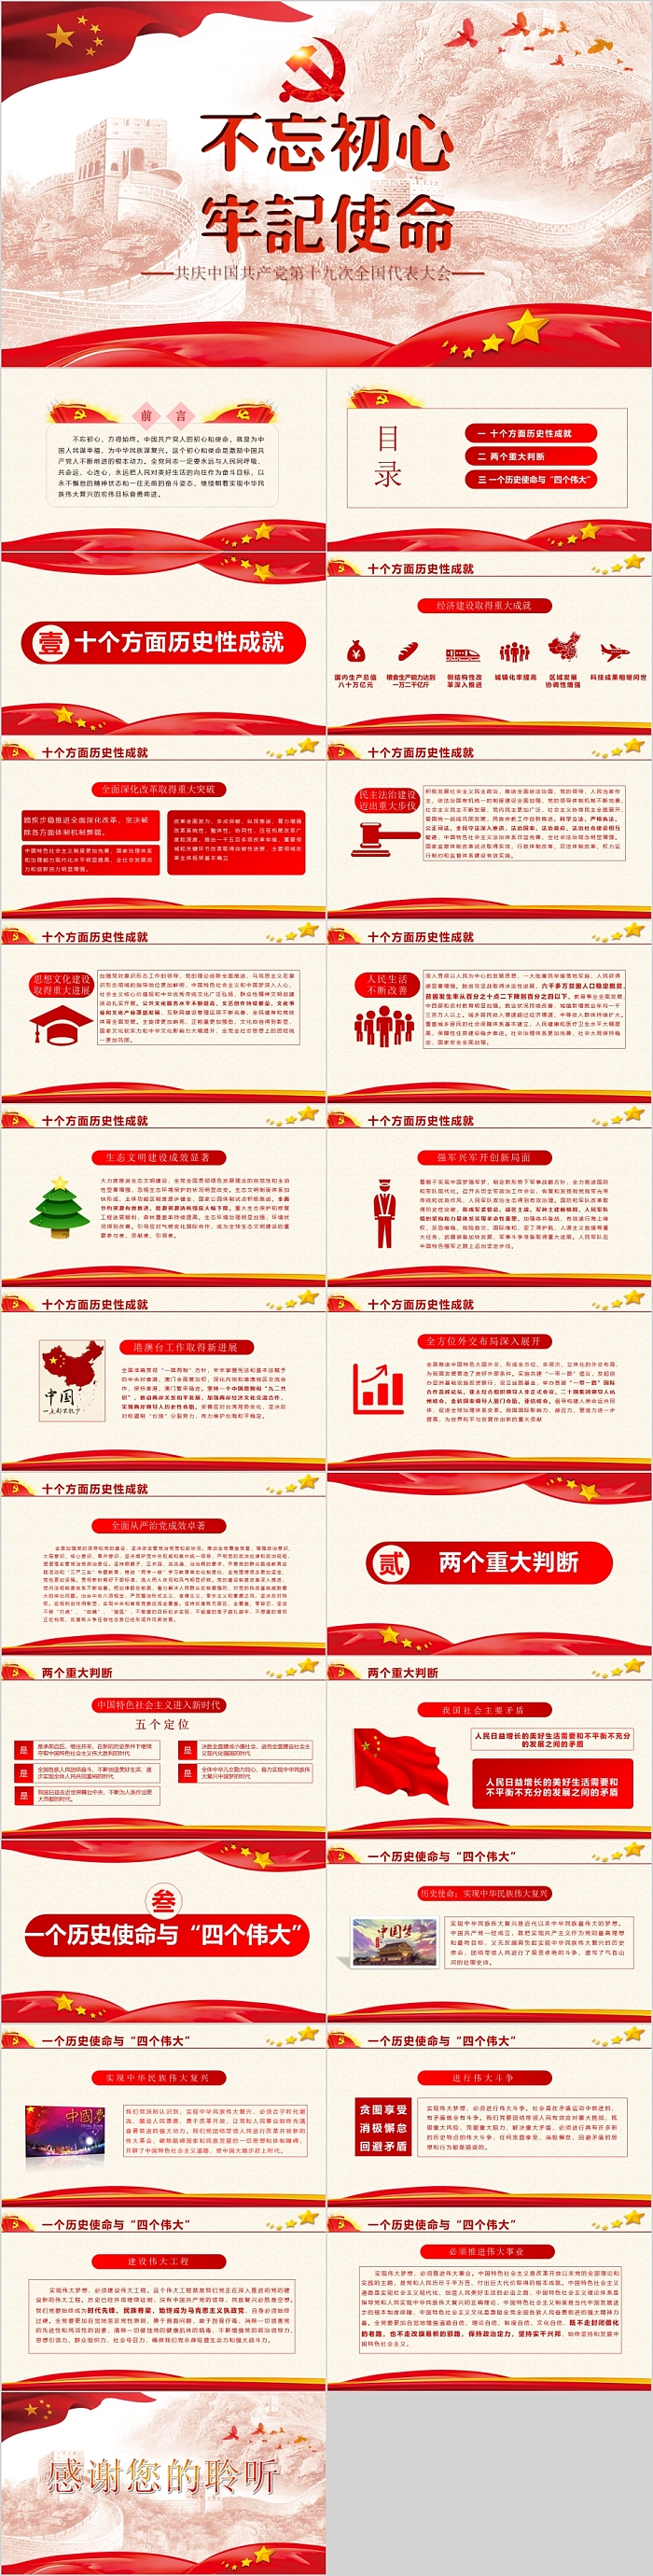 共庆中国共产党第十九次全国代表大会PPT模板